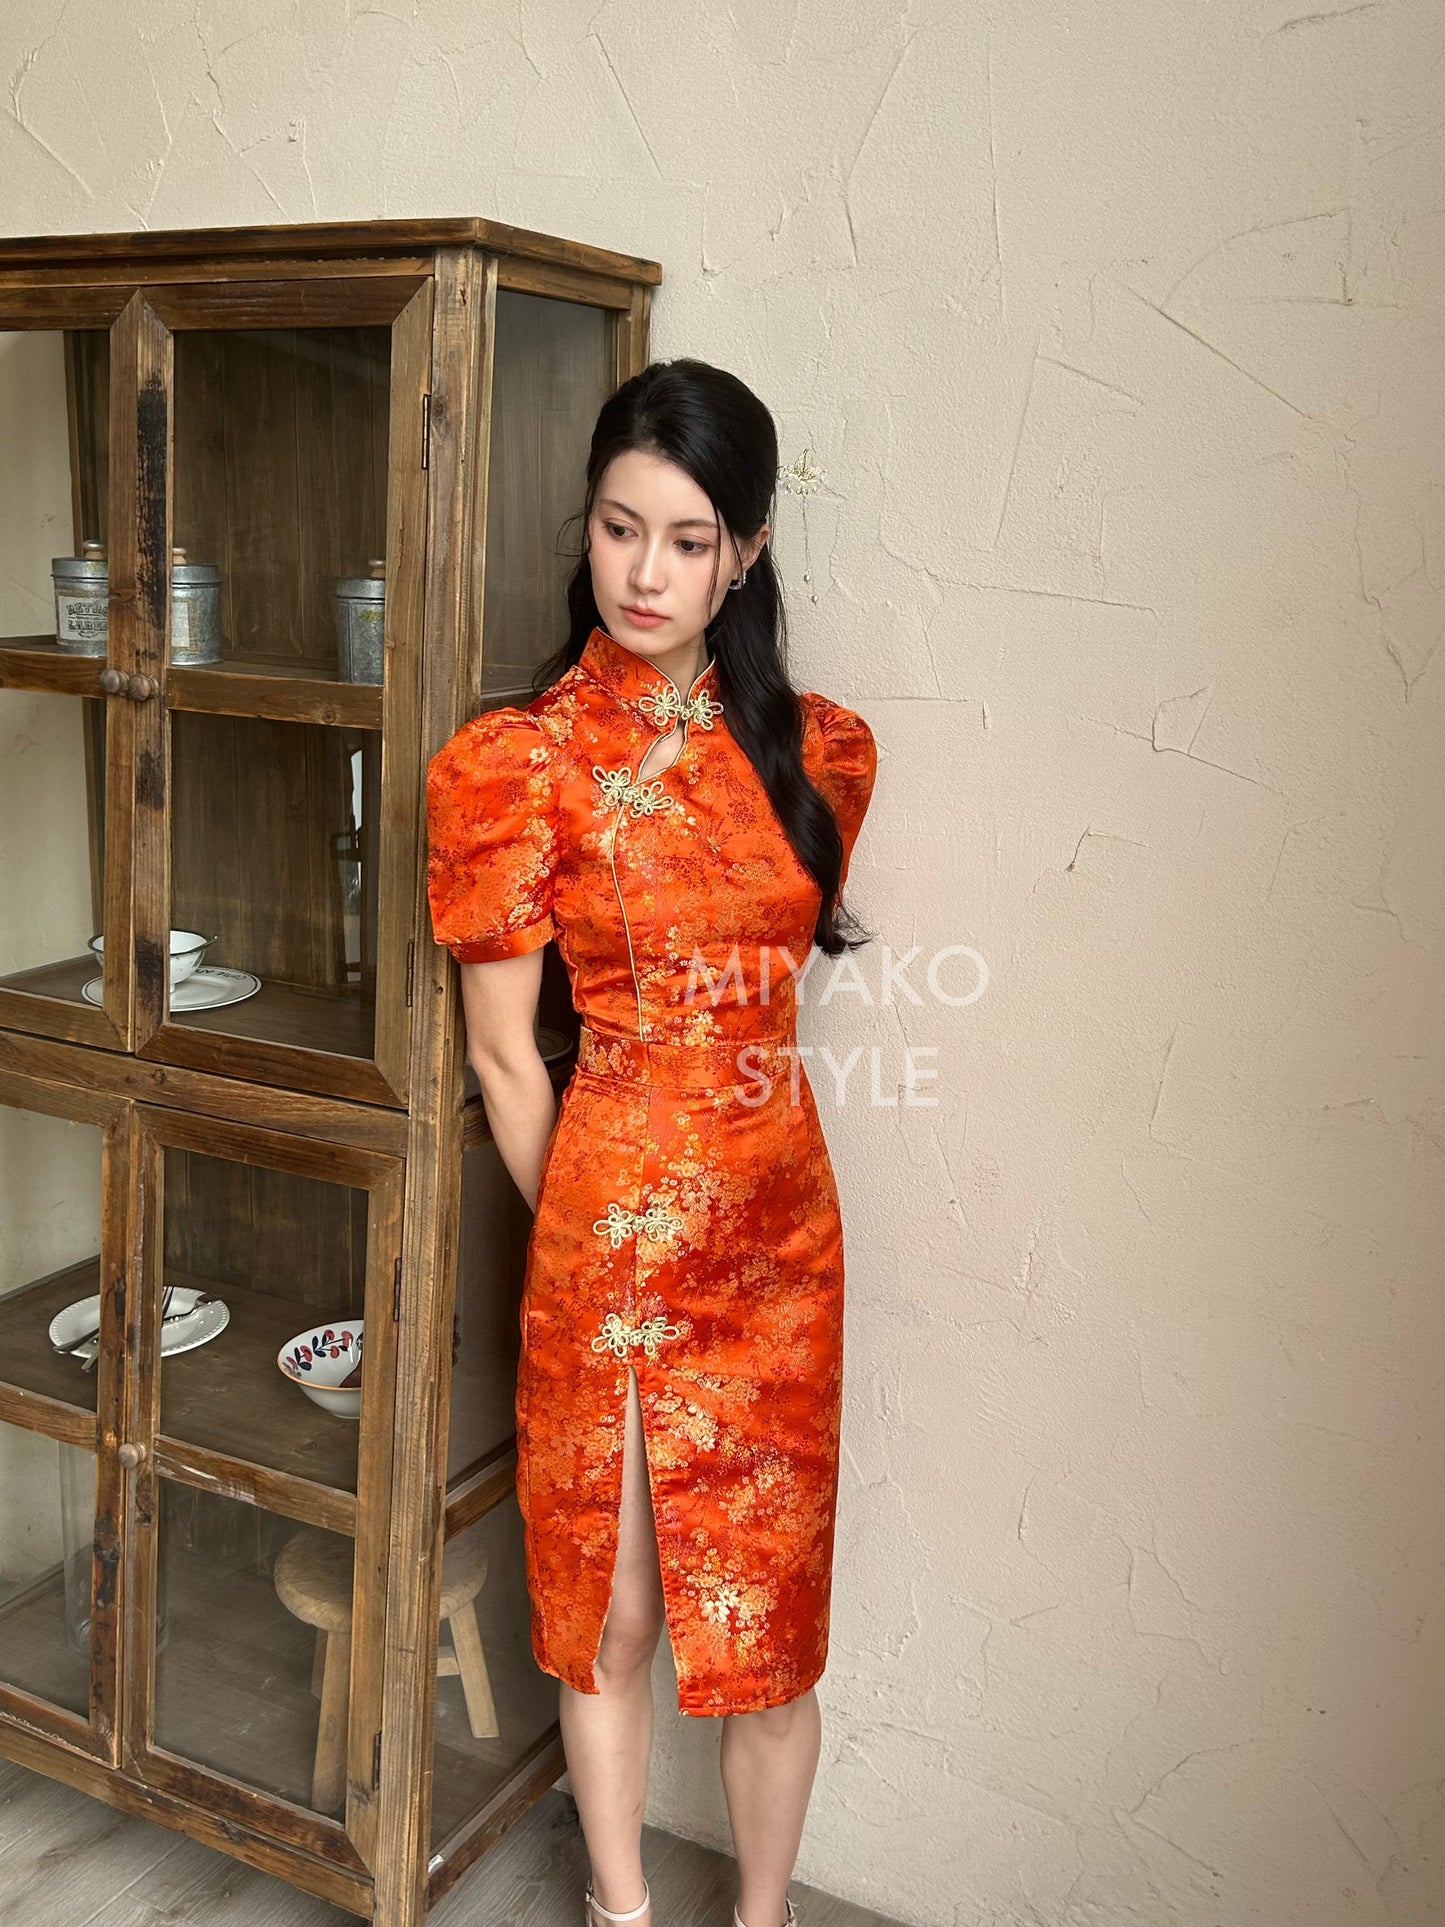 【华丽转身】Li Cheongsam crop top in Orange 橘色上衣 ( Top Only)